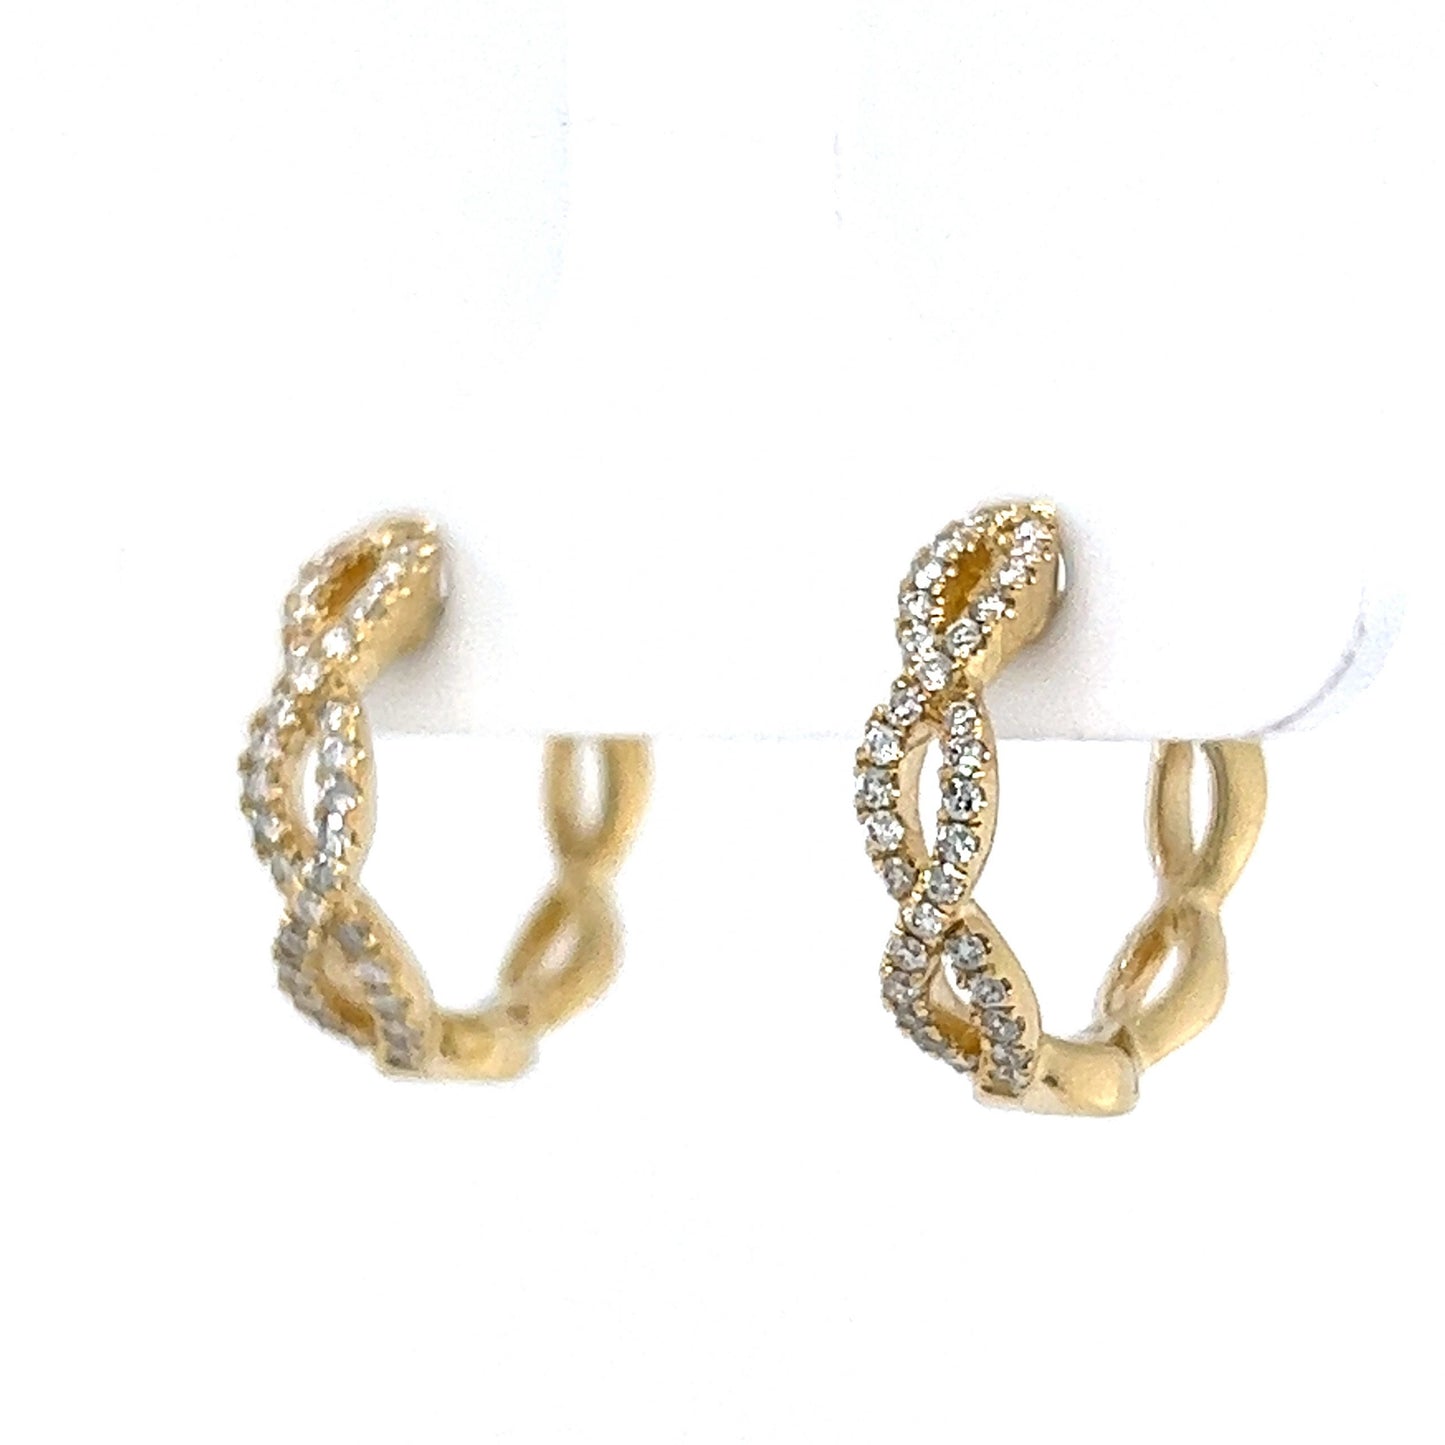 Pave Diamond Twist Hoop Earrings in 14k Yellow Gold